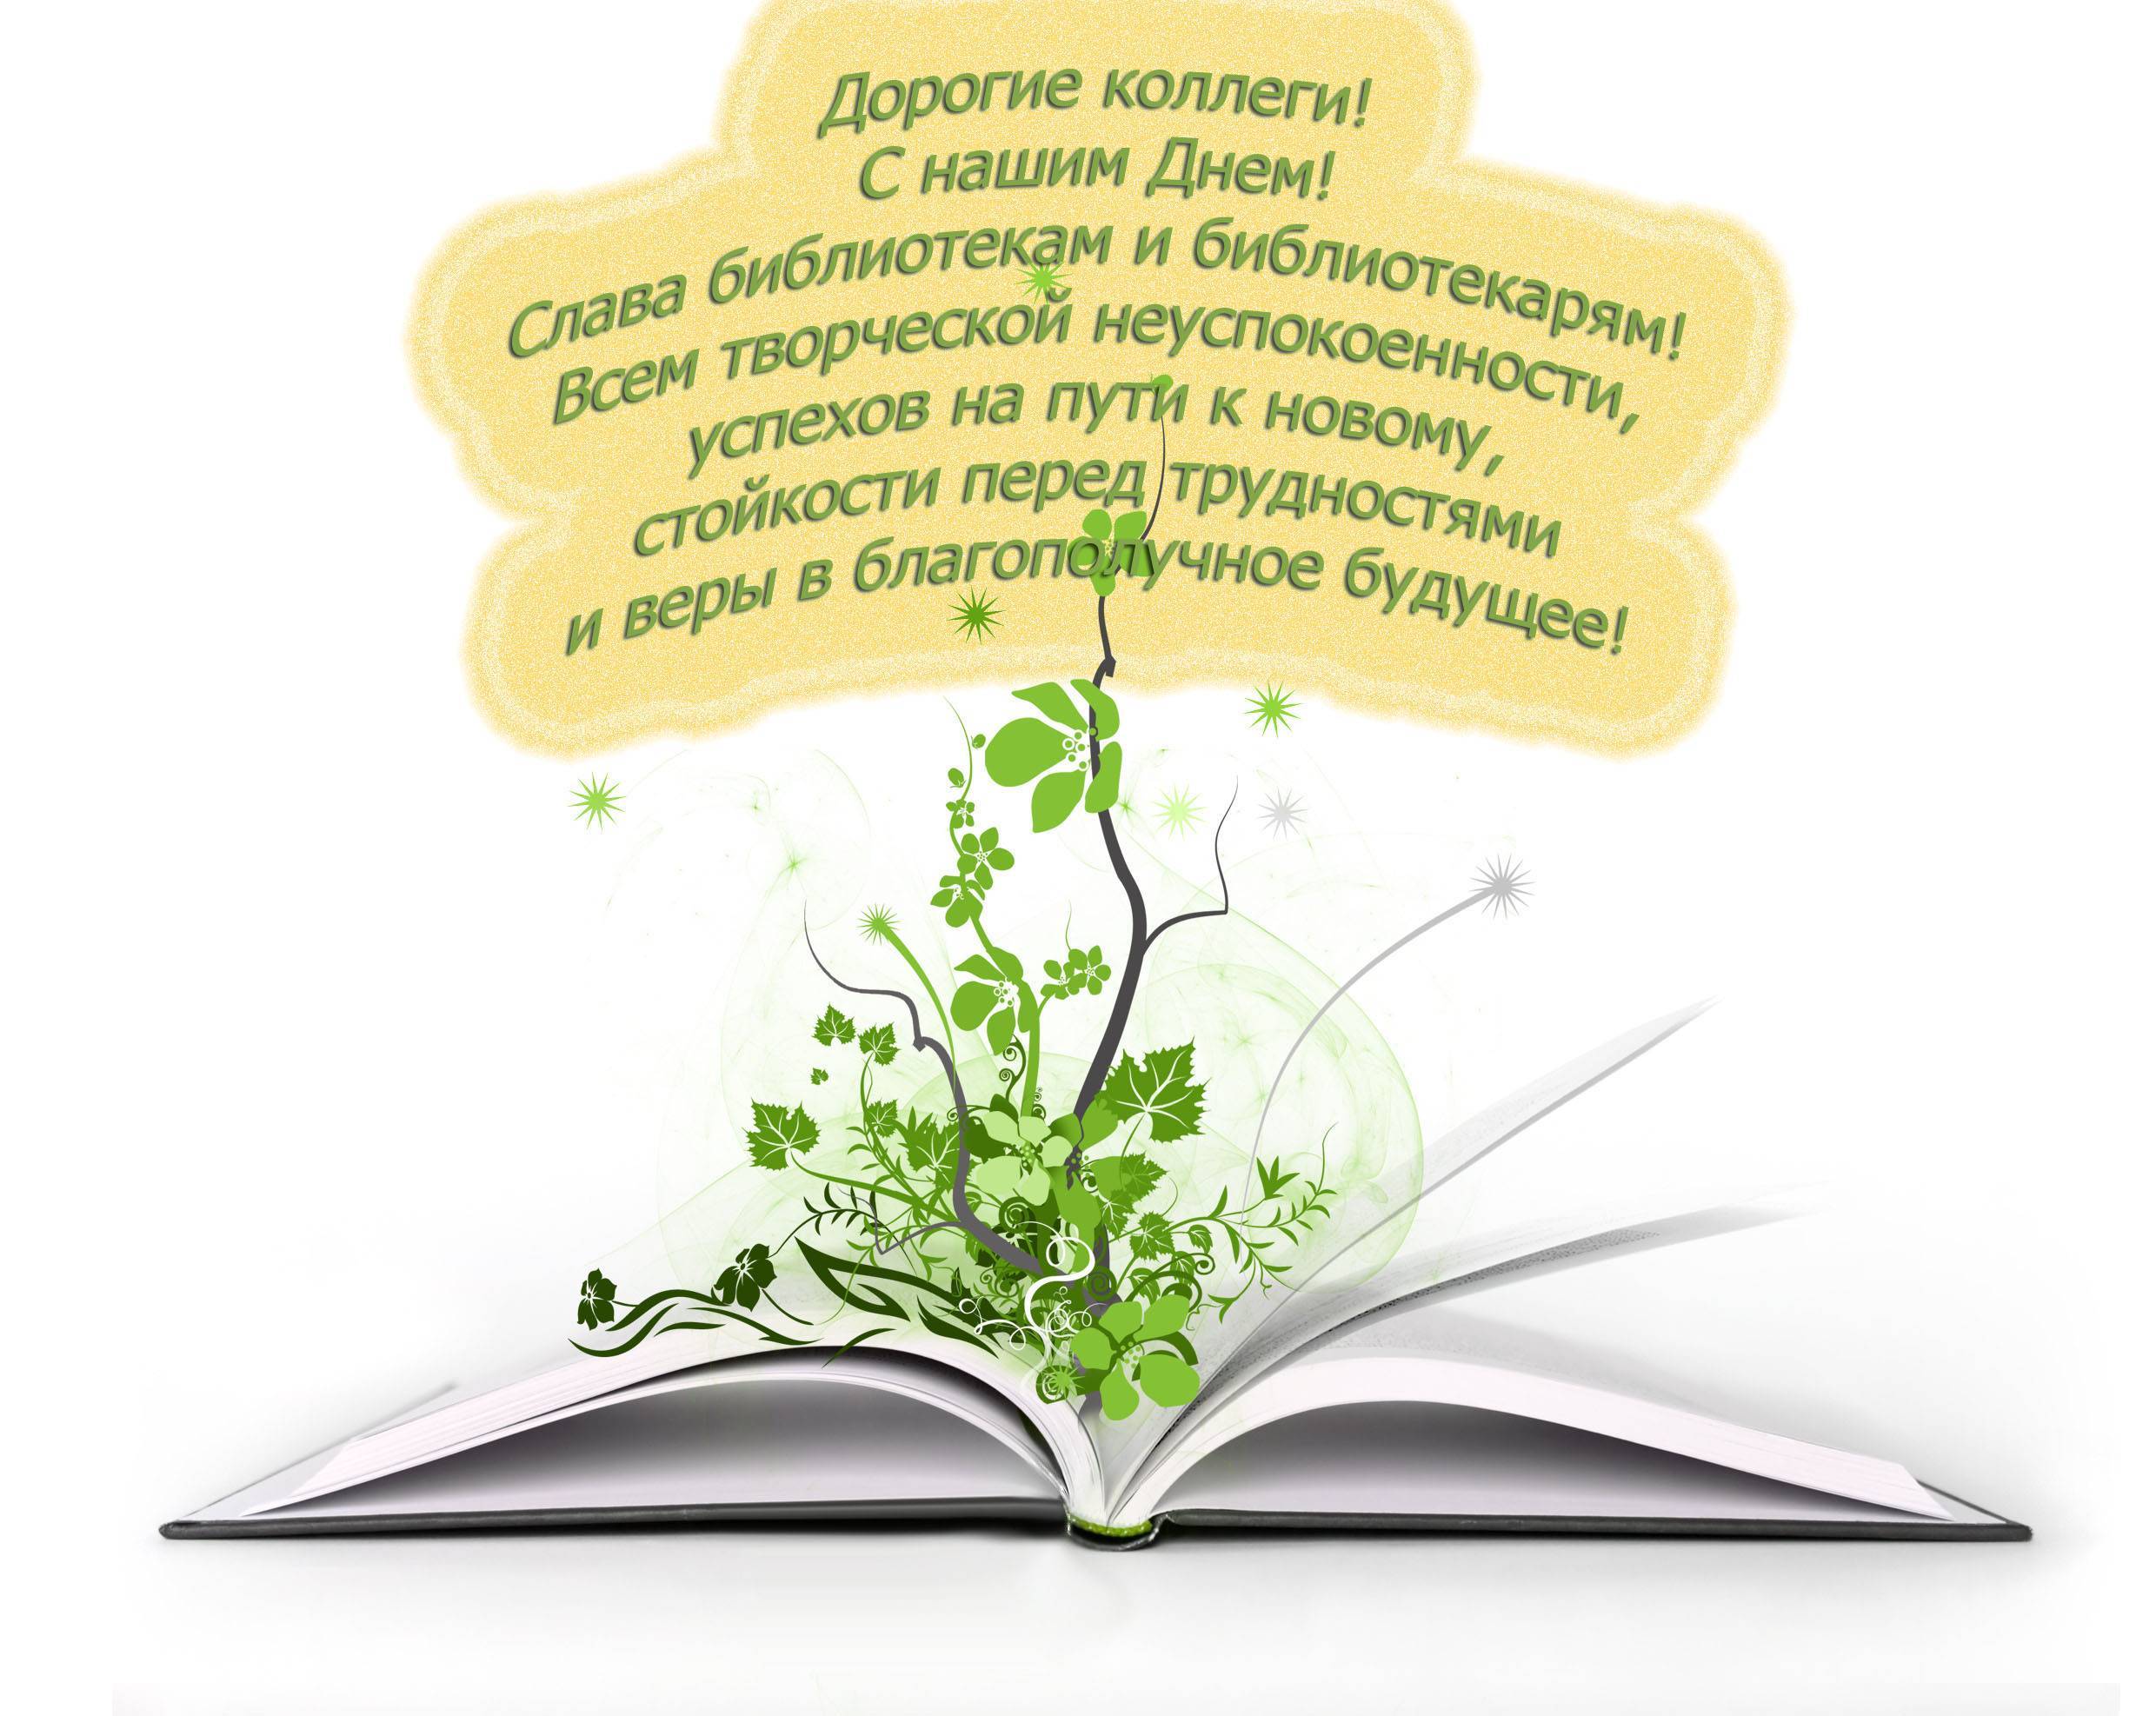 Сценарий к Общероссийскому Дню библиотек "Большие интеллектуальные игры"